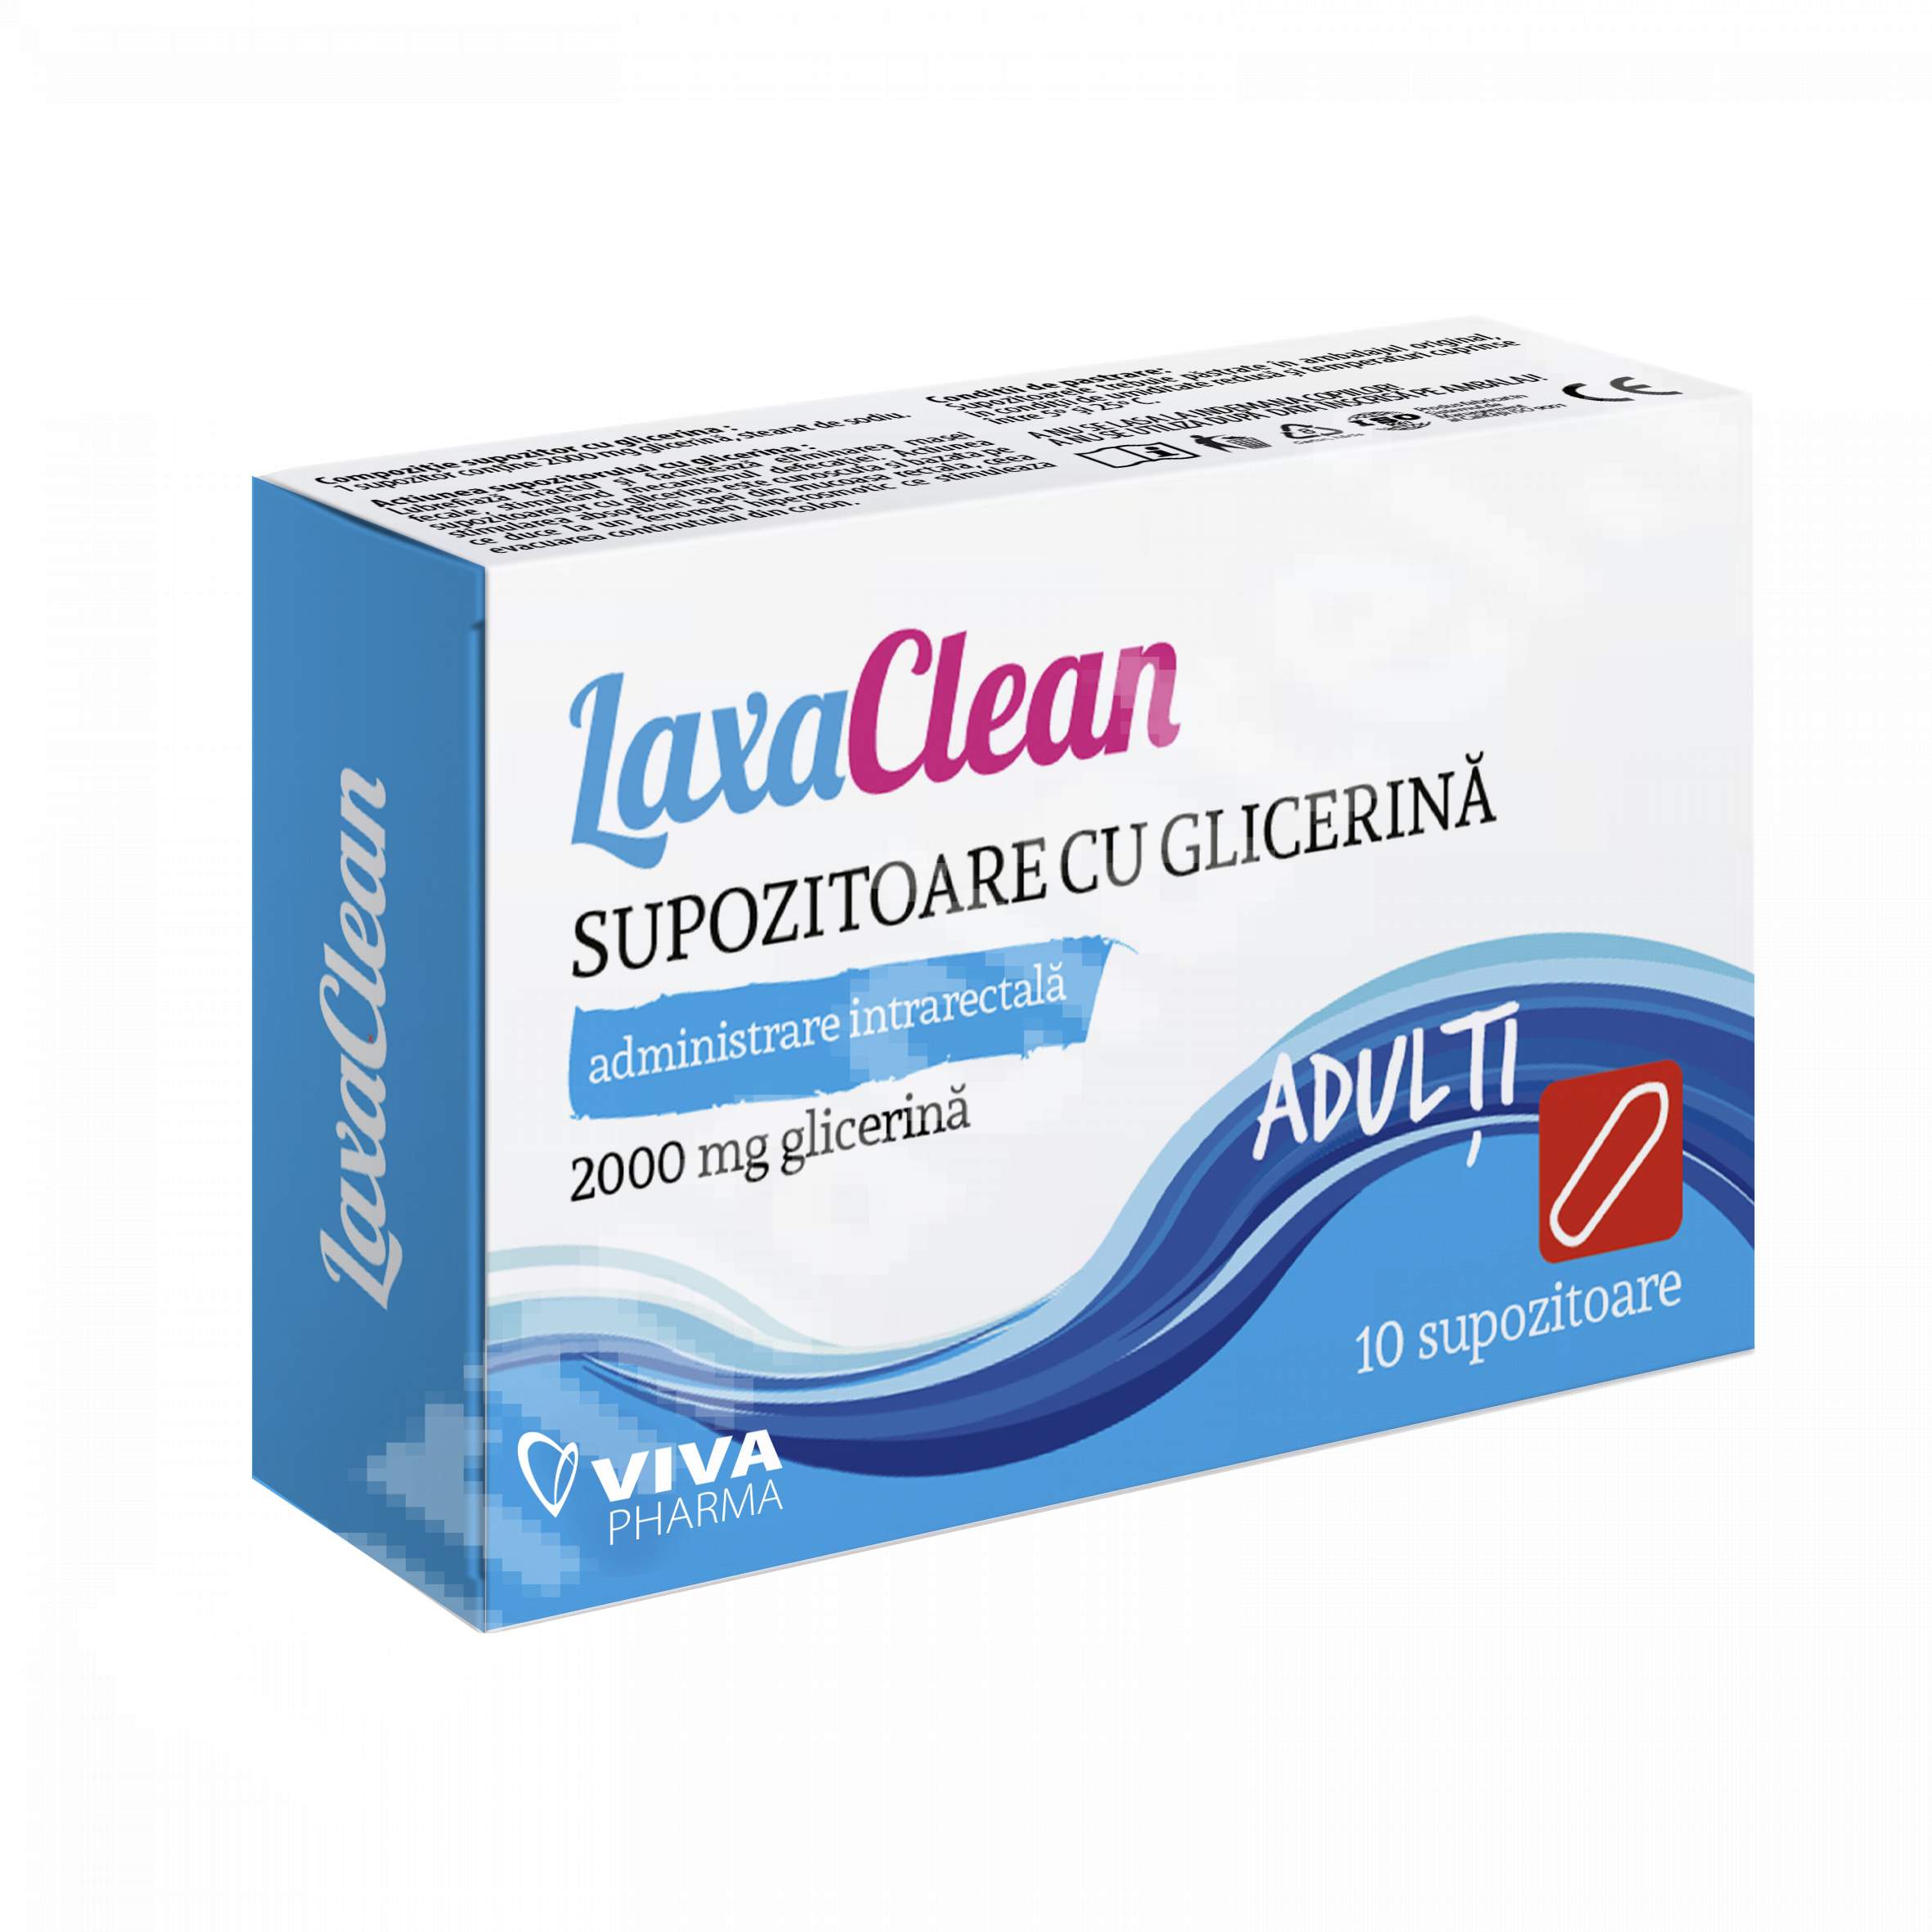 Suplimente alimentare - Supozitoare cu glicerina pentru adulti LaxaClean, 10 bucati, Viva Pharma, nordpharm.ro